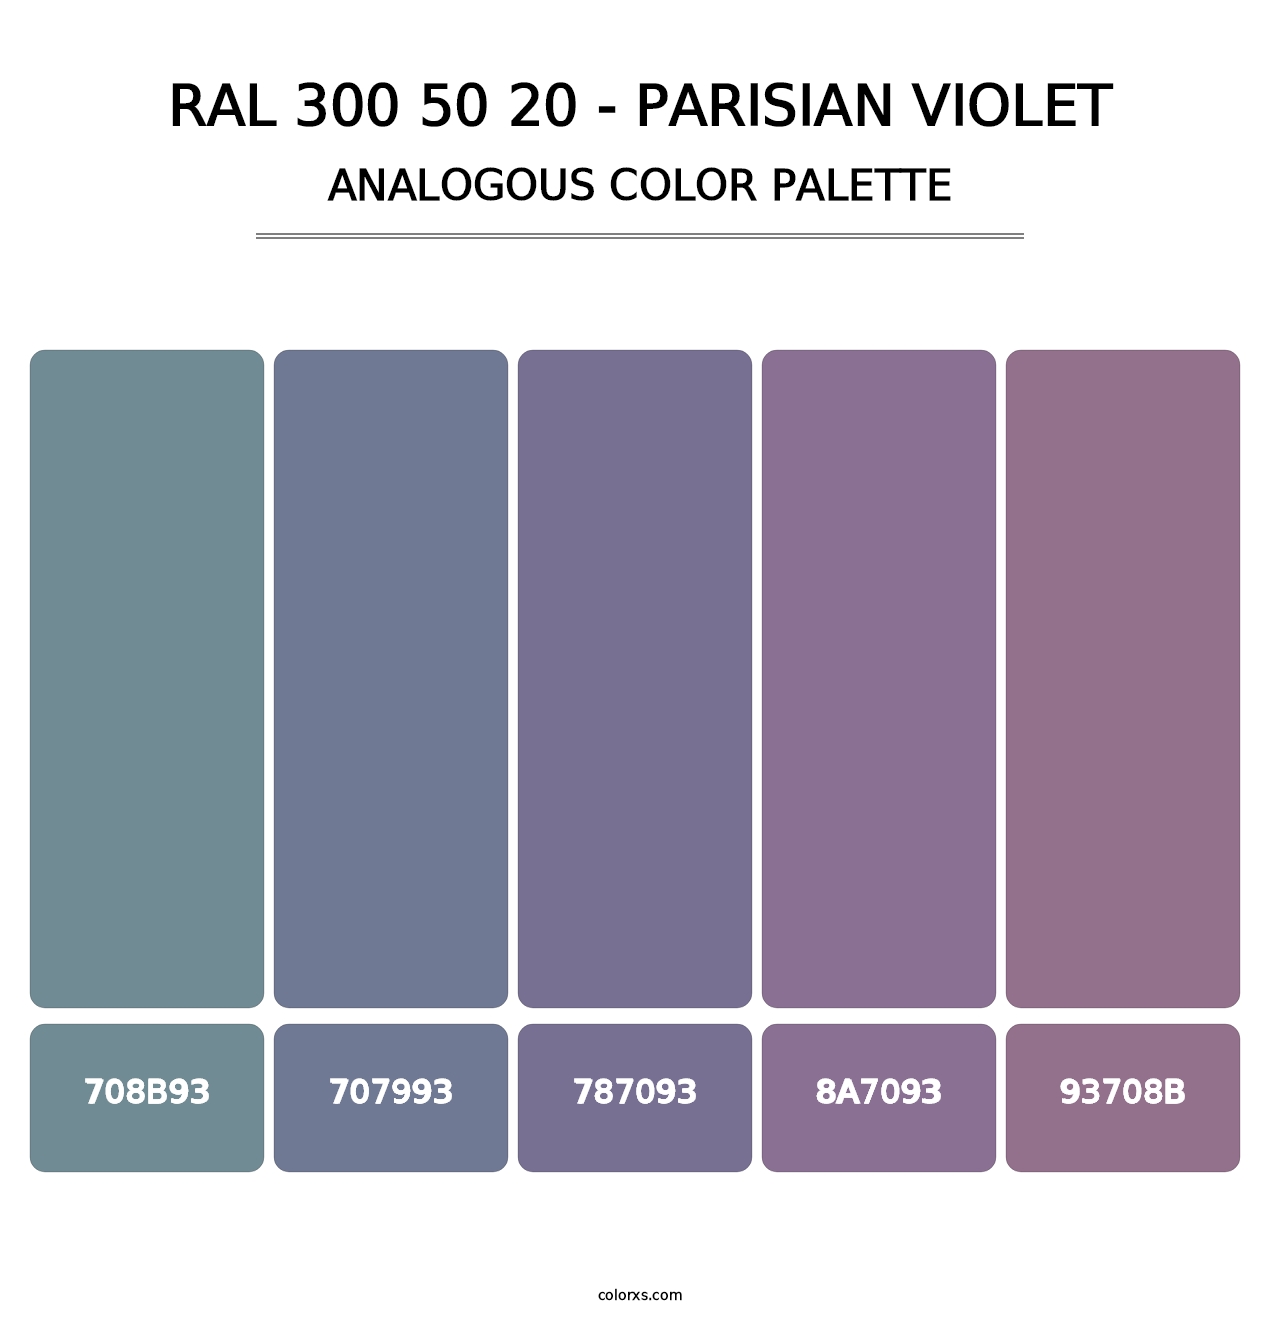 RAL 300 50 20 - Parisian Violet - Analogous Color Palette